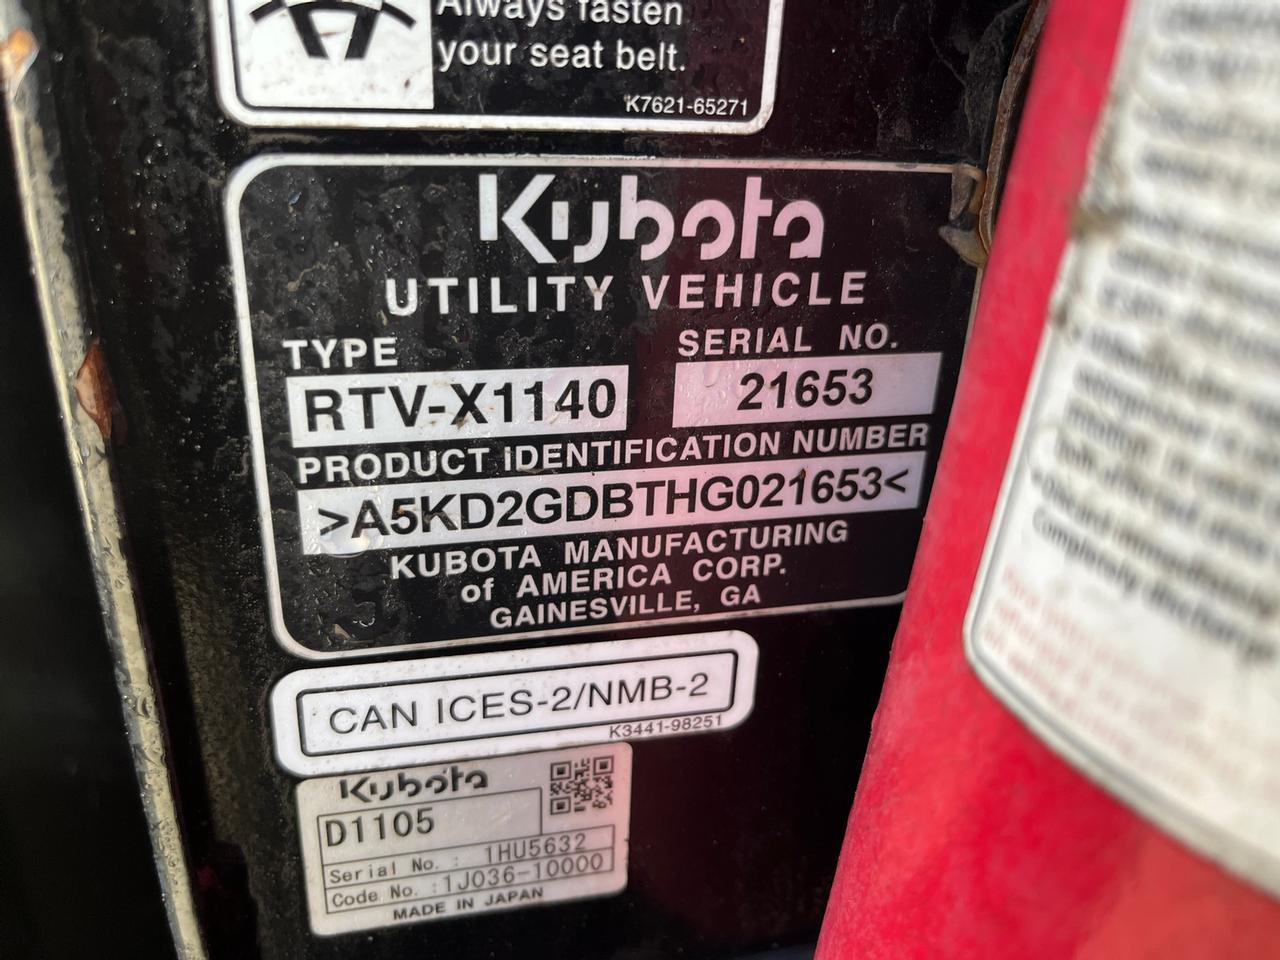 Kubota RTV-X1140W Utility Vehicle